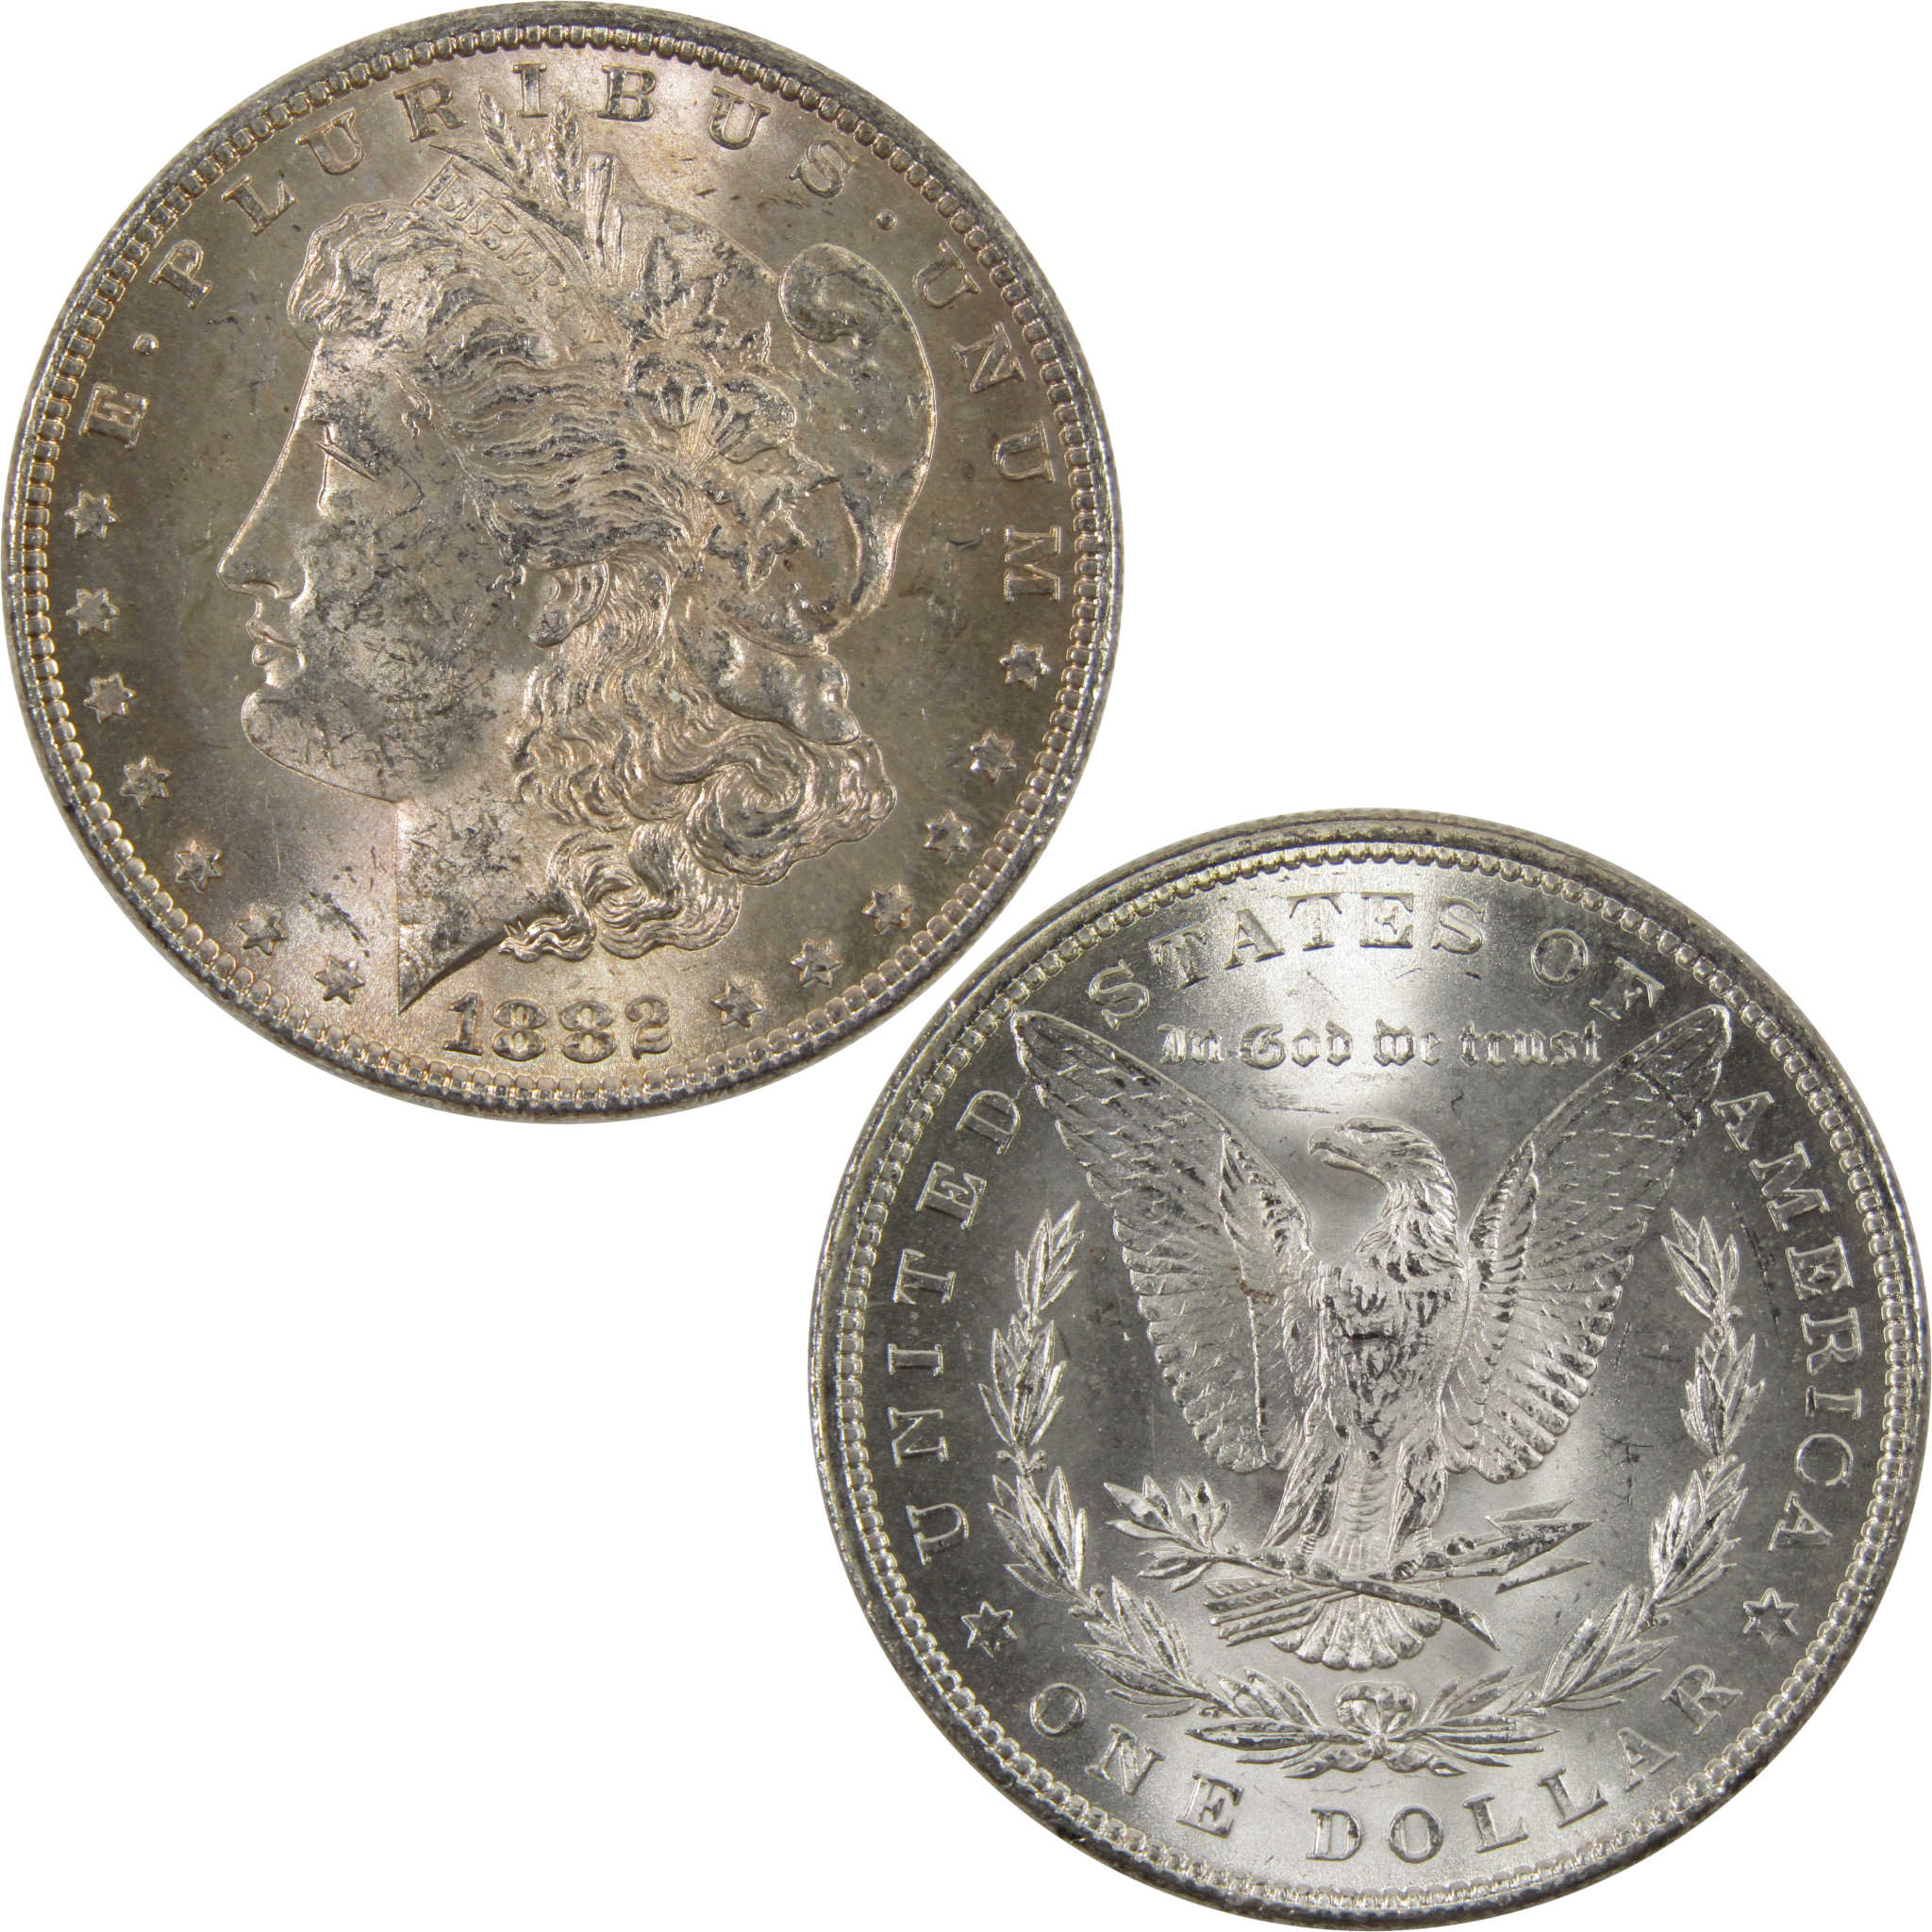 1882 Morgan Dollar BU Uncirculated 90% Silver $1 Coin SKU:I7634 - Morgan coin - Morgan silver dollar - Morgan silver dollar for sale - Profile Coins &amp; Collectibles